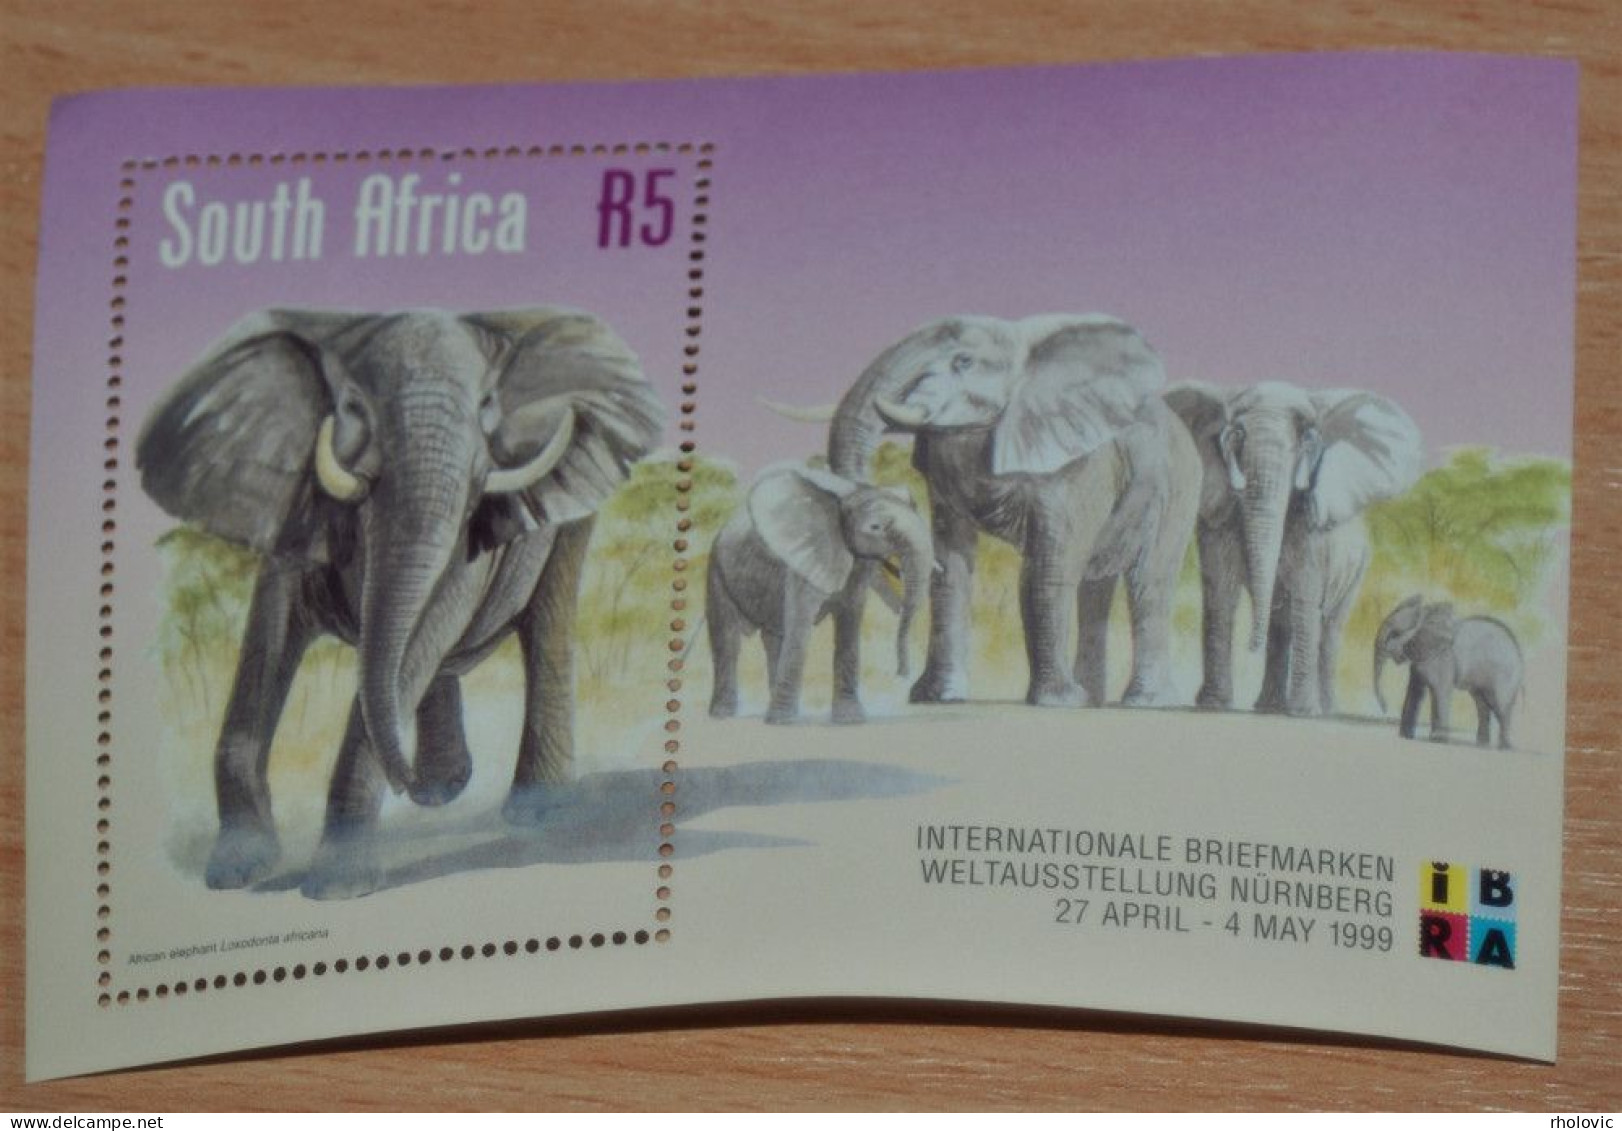 SOUTH AFRIKA 1999, Stamp Exhibition IBRA '99, Elephants, Animals, Fauna, Mi #B75, Souvenir Sheet, MNH** - Eléphants